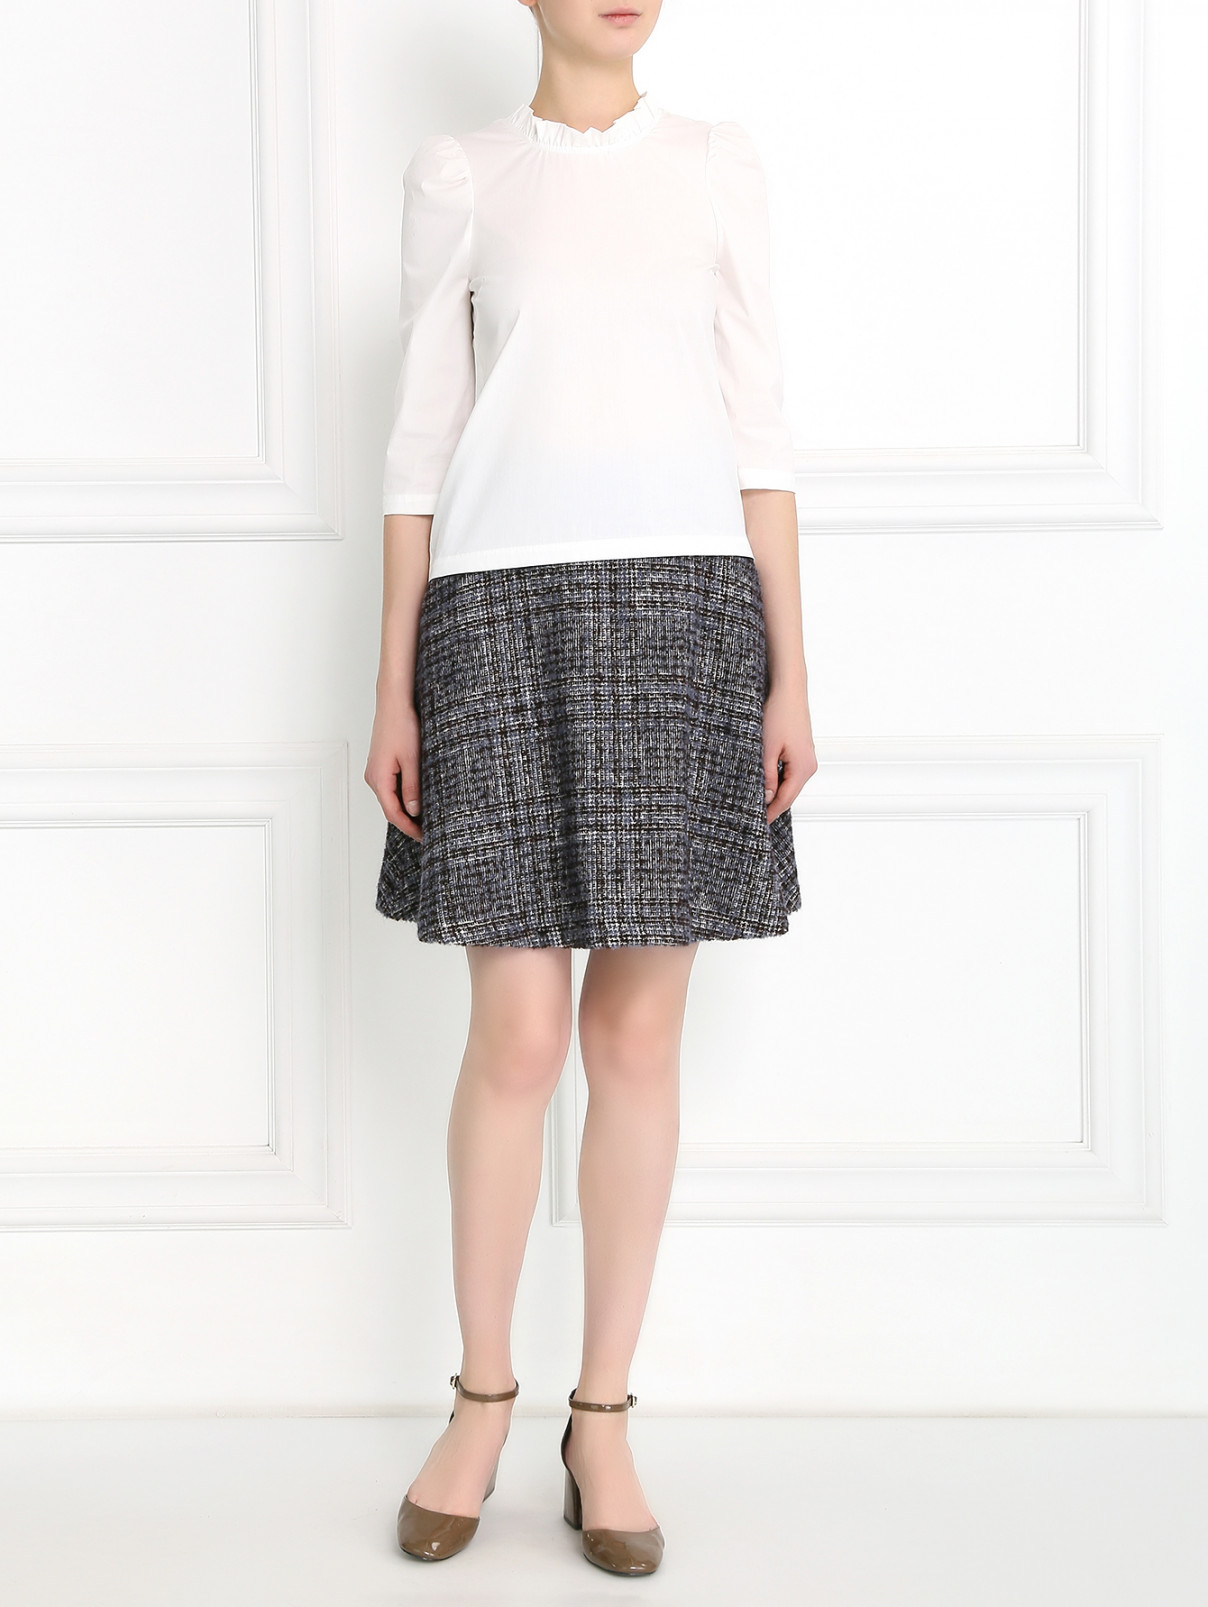 Блуза из хлопка с рукавом 3/4 L'Autre Chose  –  Модель Общий вид  – Цвет:  Белый